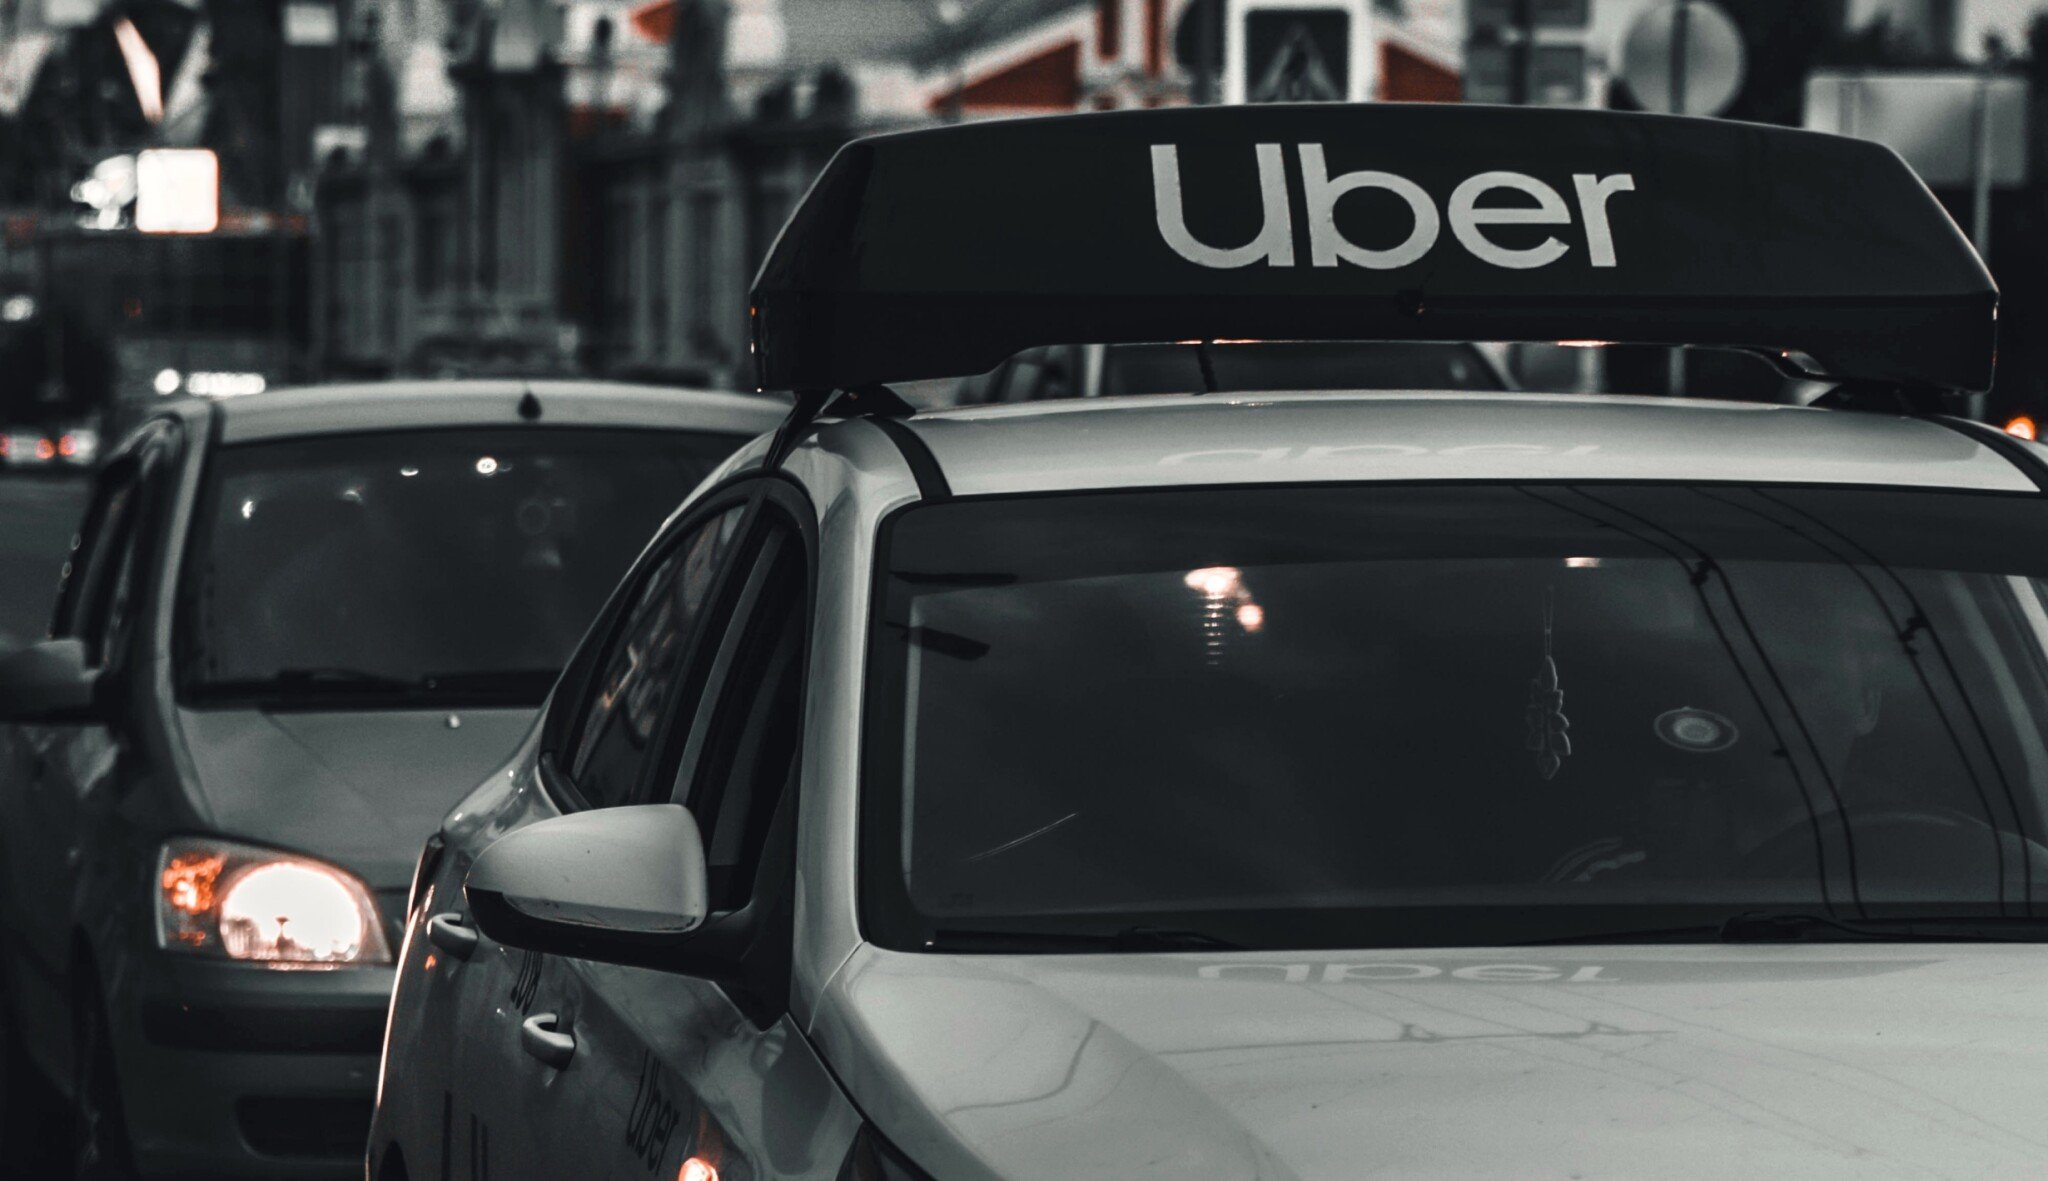 Taxislužbu na pražském letišti bude provozovat Uber. Garantuje předem stanovenou cenu